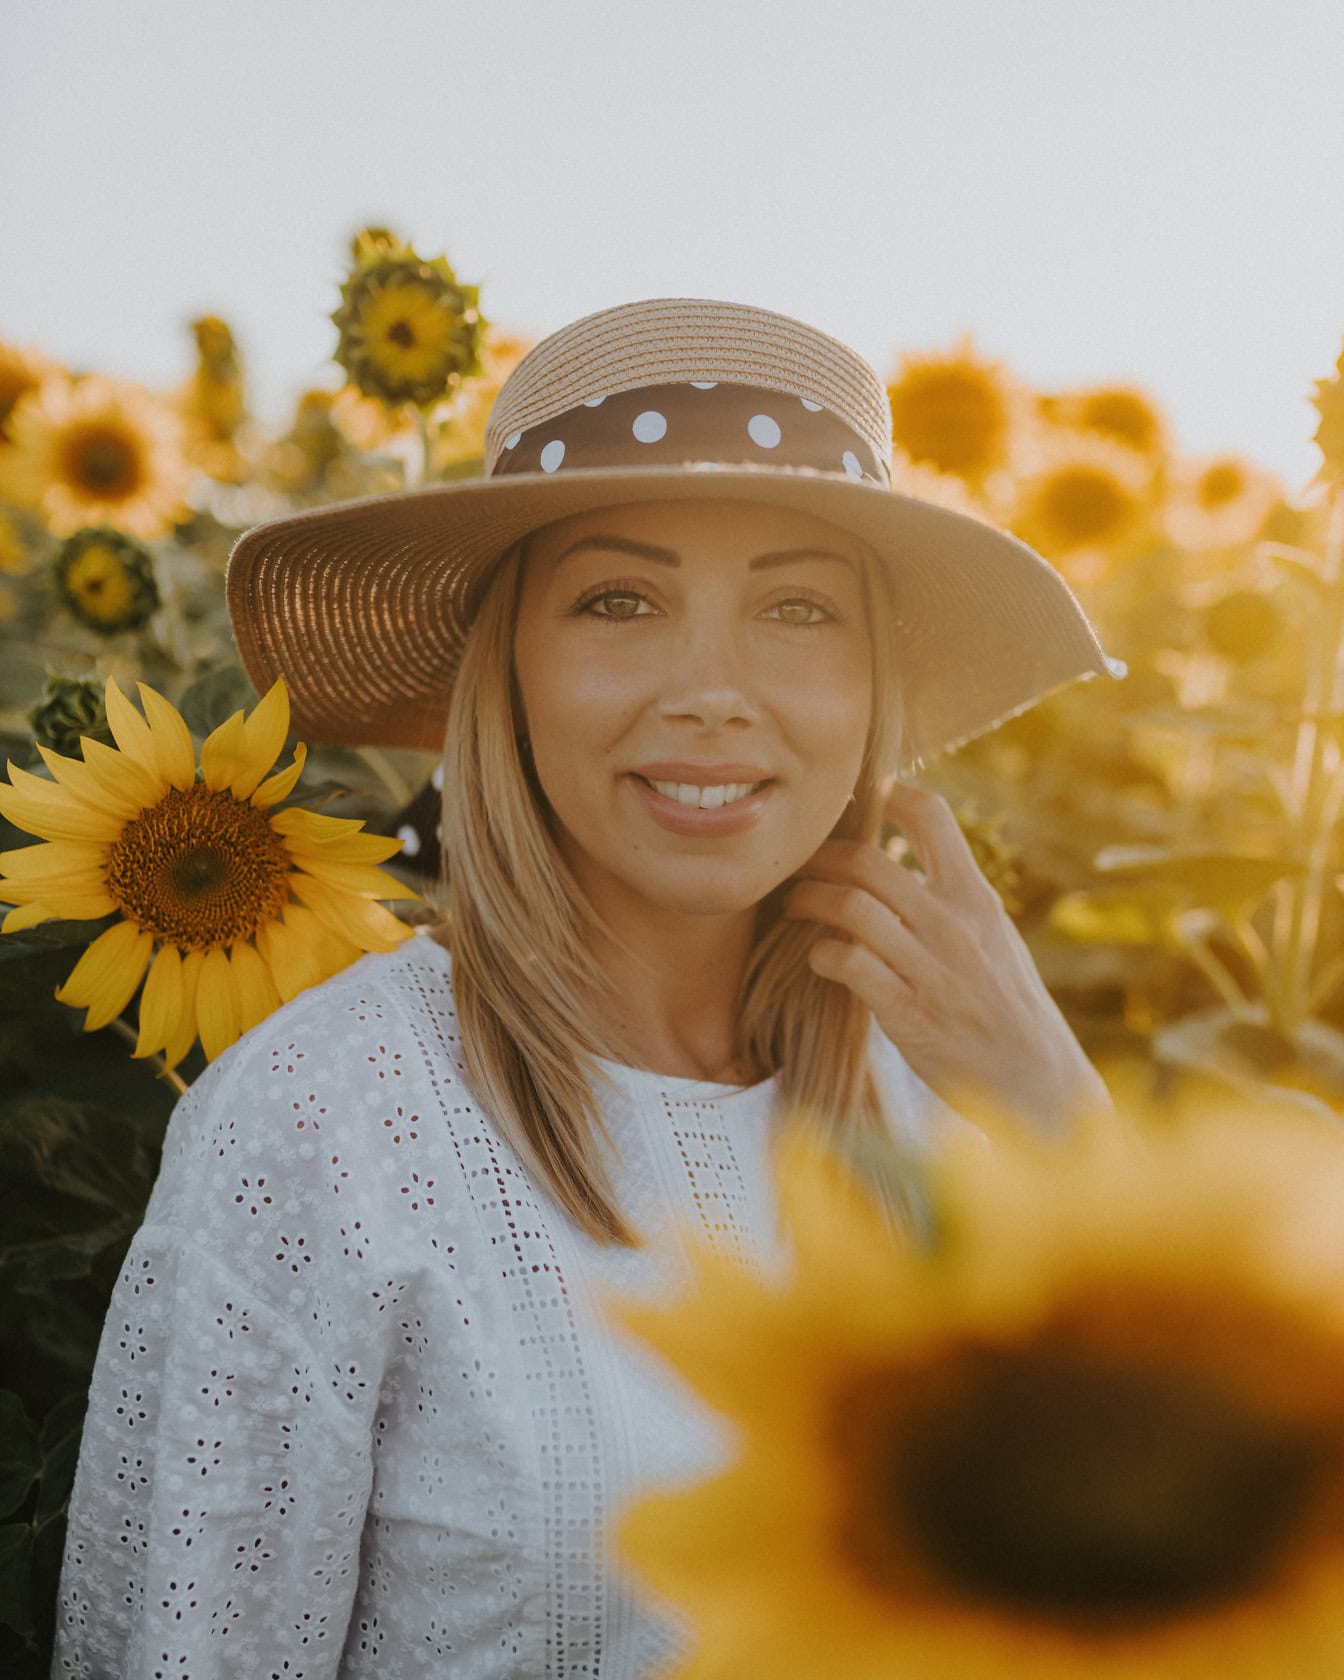 Profesionalna portretna fotografija s prekrasnom mladom ženom foto model nosi slamnati šešir u polju suncokreta sa sunčevim zrakama kao pozadinsko osvjetljenje